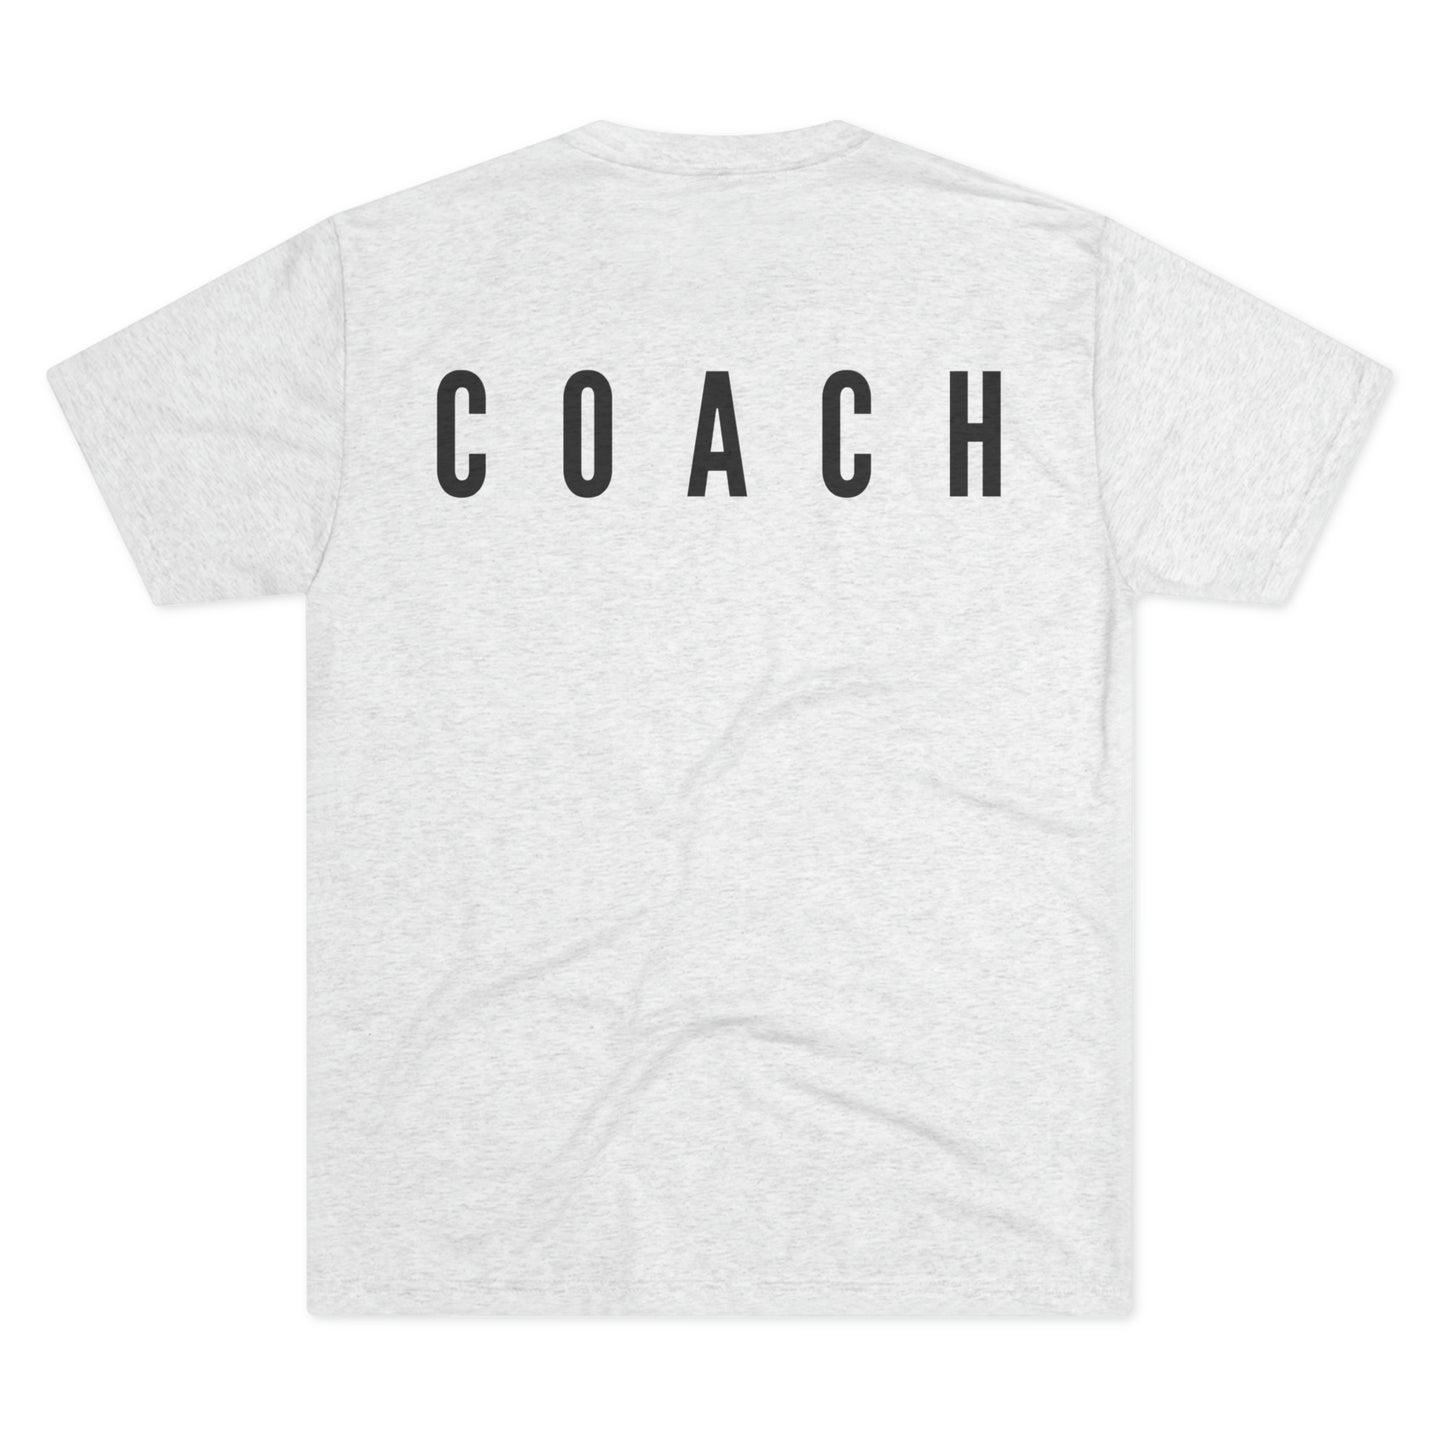 Coaches Values T